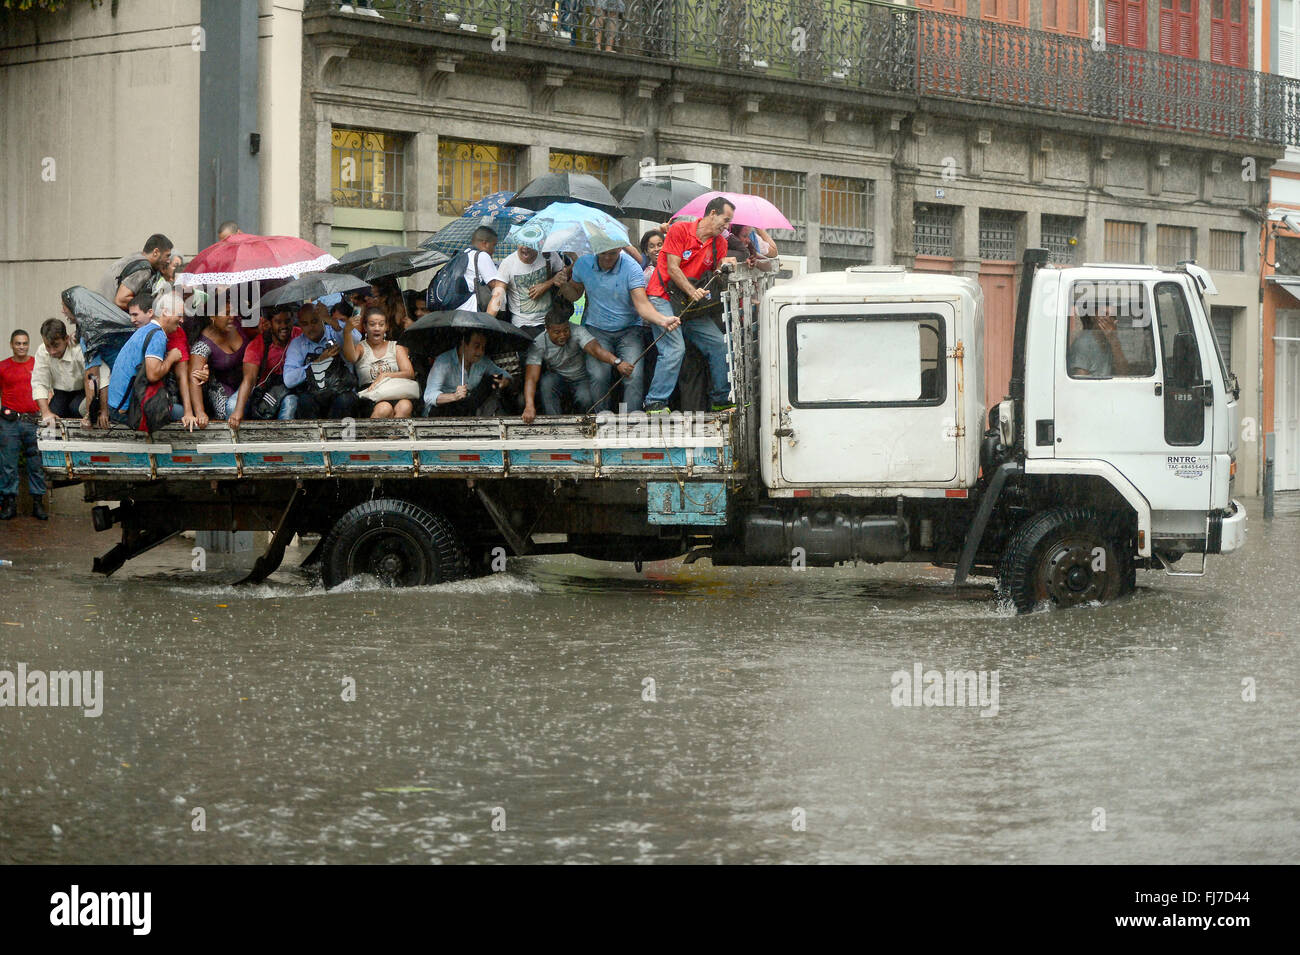 Rio De Janeiro, Brasilien. 29. Februar 2016. Fußgänger werden durch die überfluteten Lavradio Straße im Stadtteil Lapa nach heftigen Gewittern 29. Februar 2016 in Rio De Janeiro, Brasilien transportiert. Stockfoto